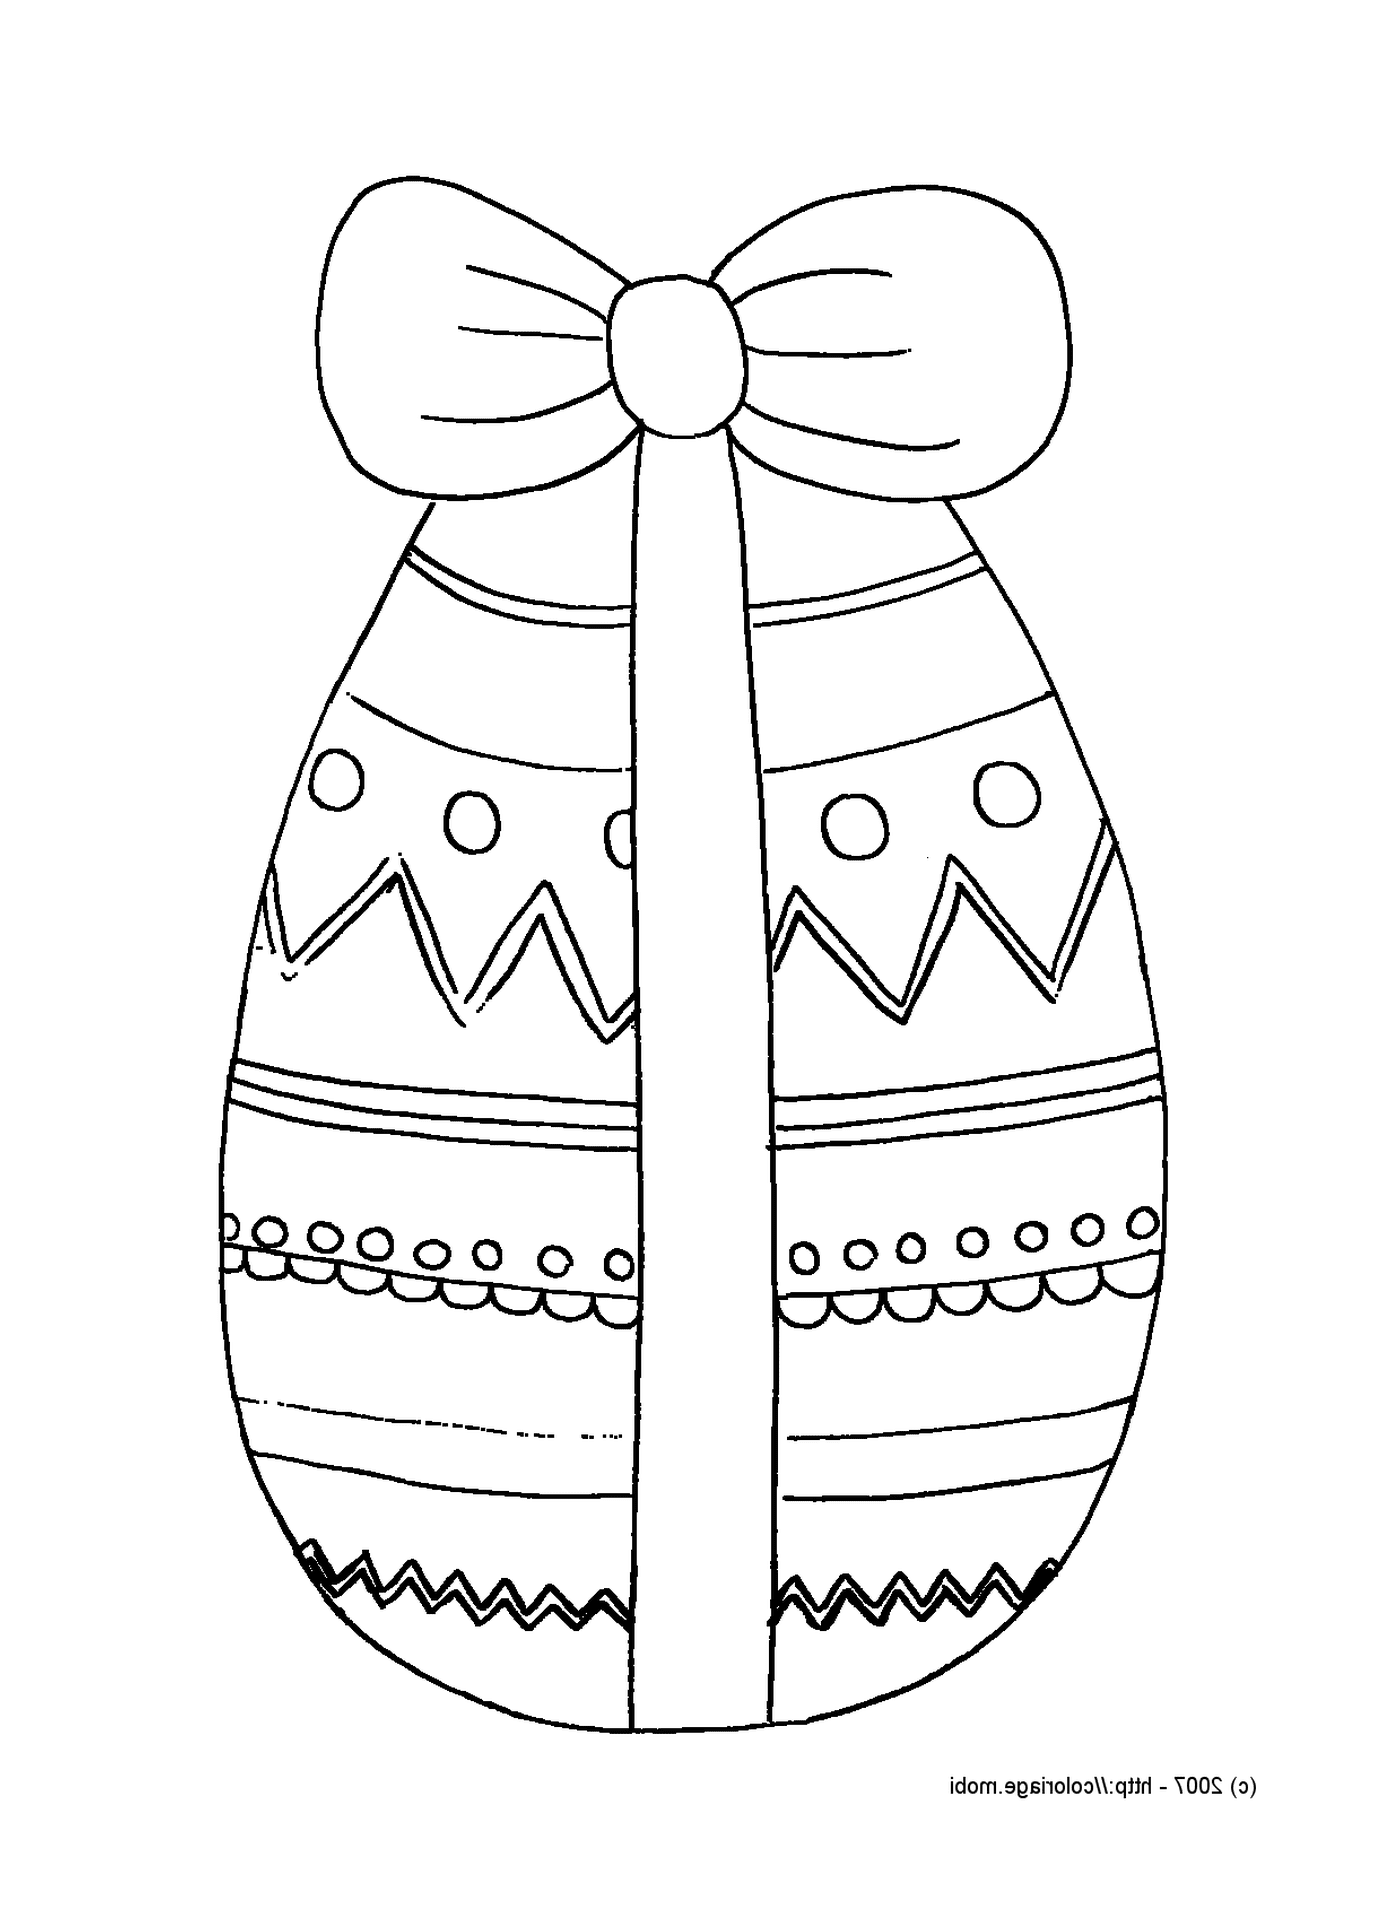  Um ovo de Páscoa embalado 